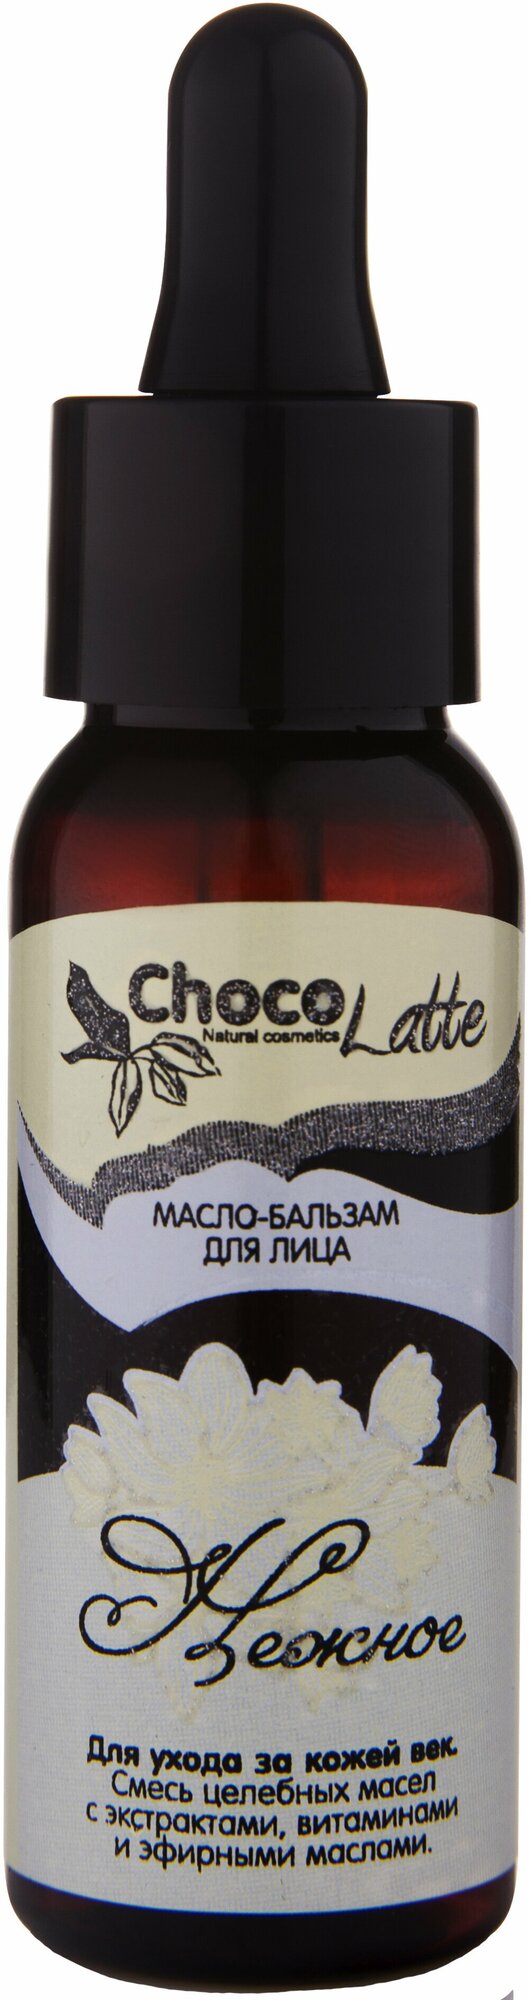 ChocoLatte Масло-бальзам для век нежное для подтяжки с anti-age эффектом 30 ml